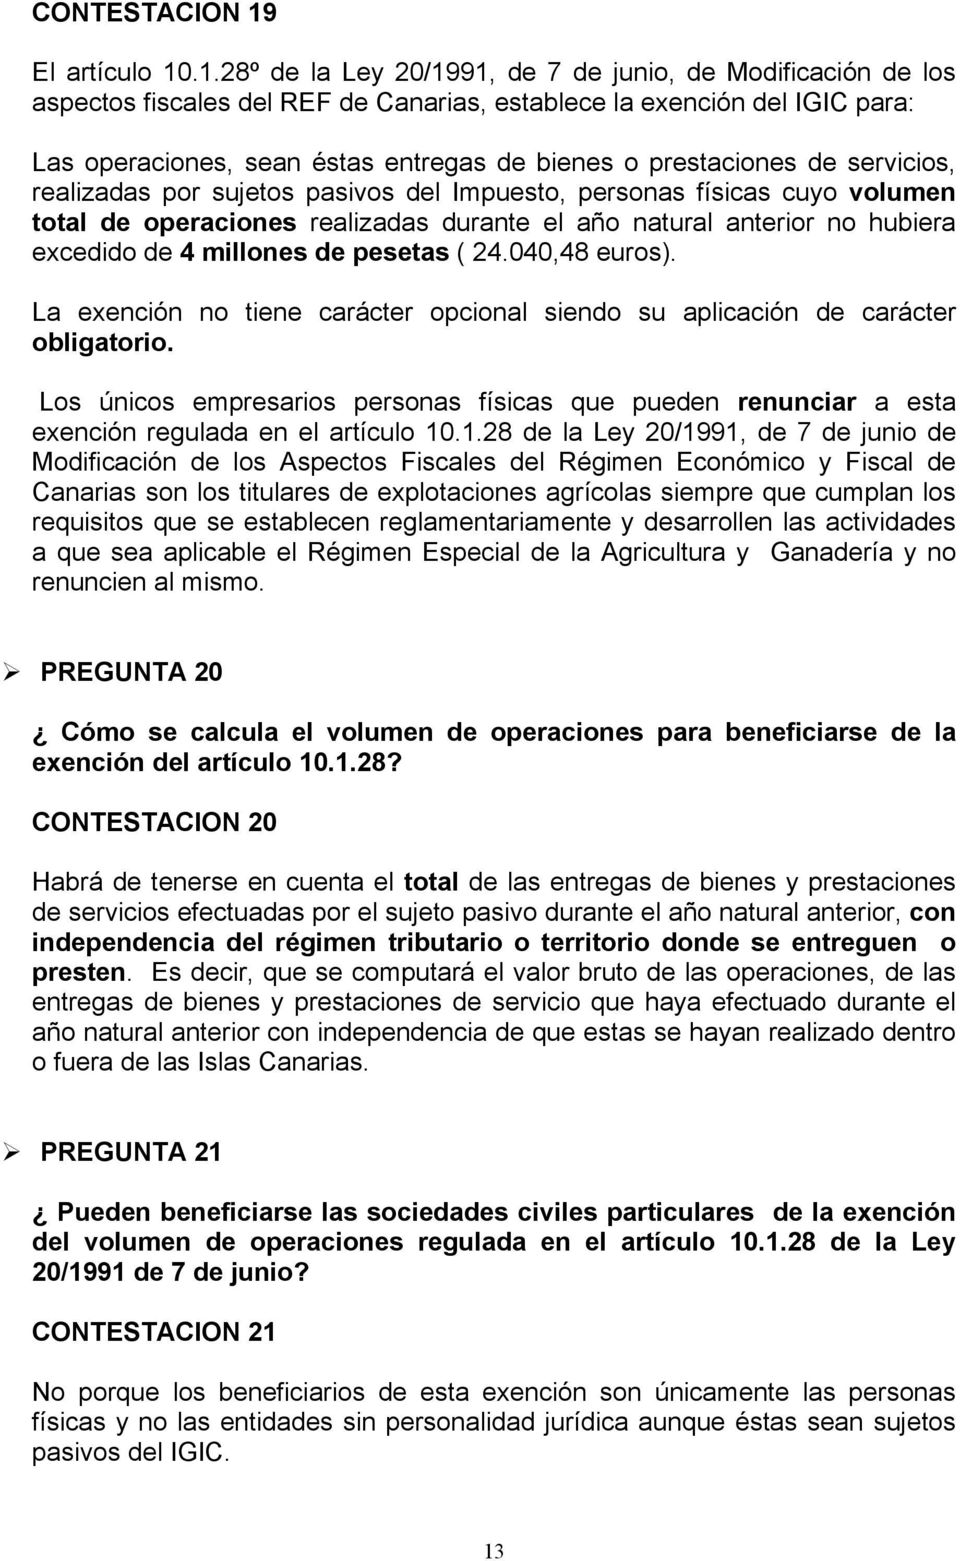 .1.28º de la Ley 20/1991, de 7 de junio, de Modificación de los aspectos fiscales del REF de Canarias, establece la exención del IGIC para: Las operaciones, sean éstas entregas de bienes o